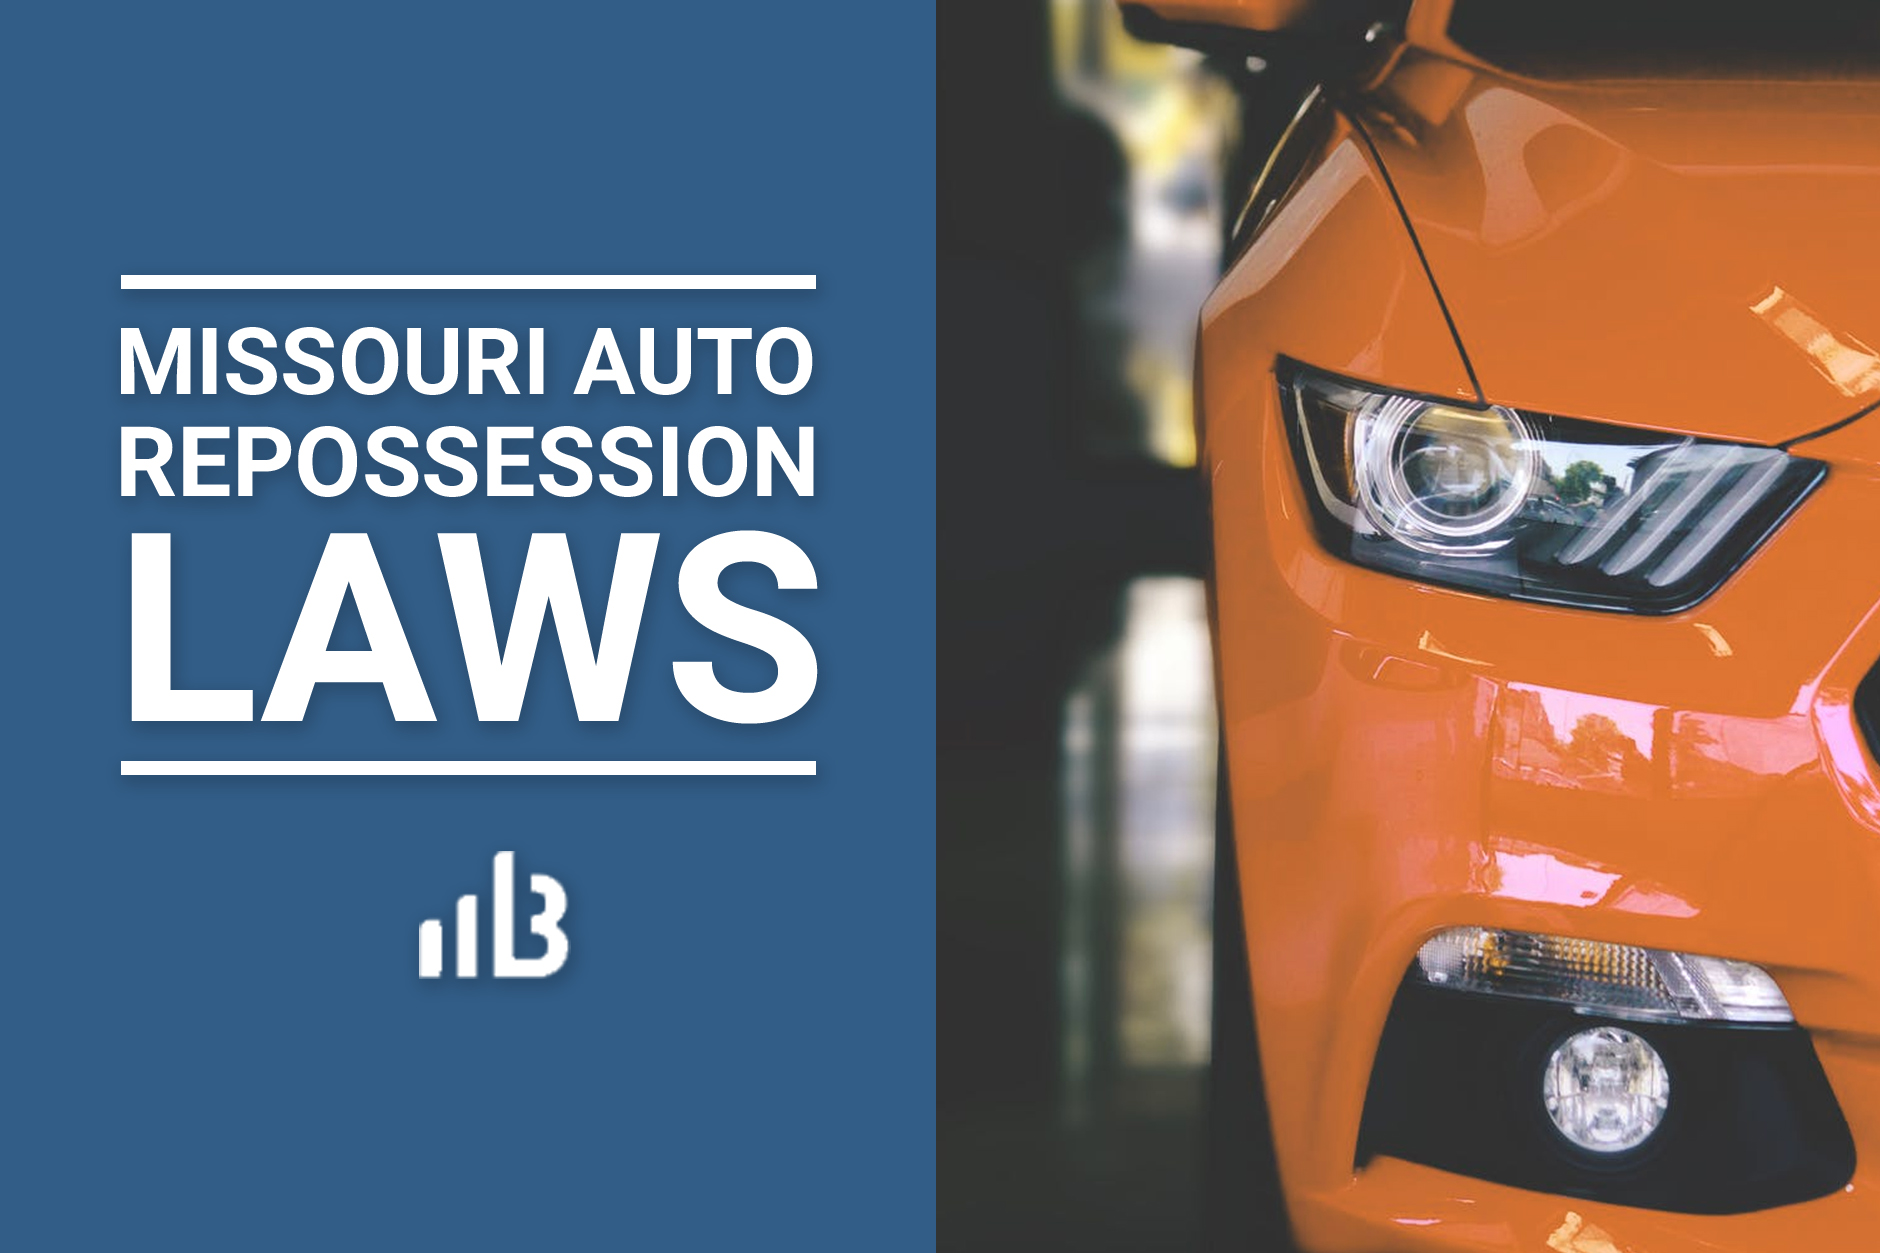 Missouri Auto Repossession Laws